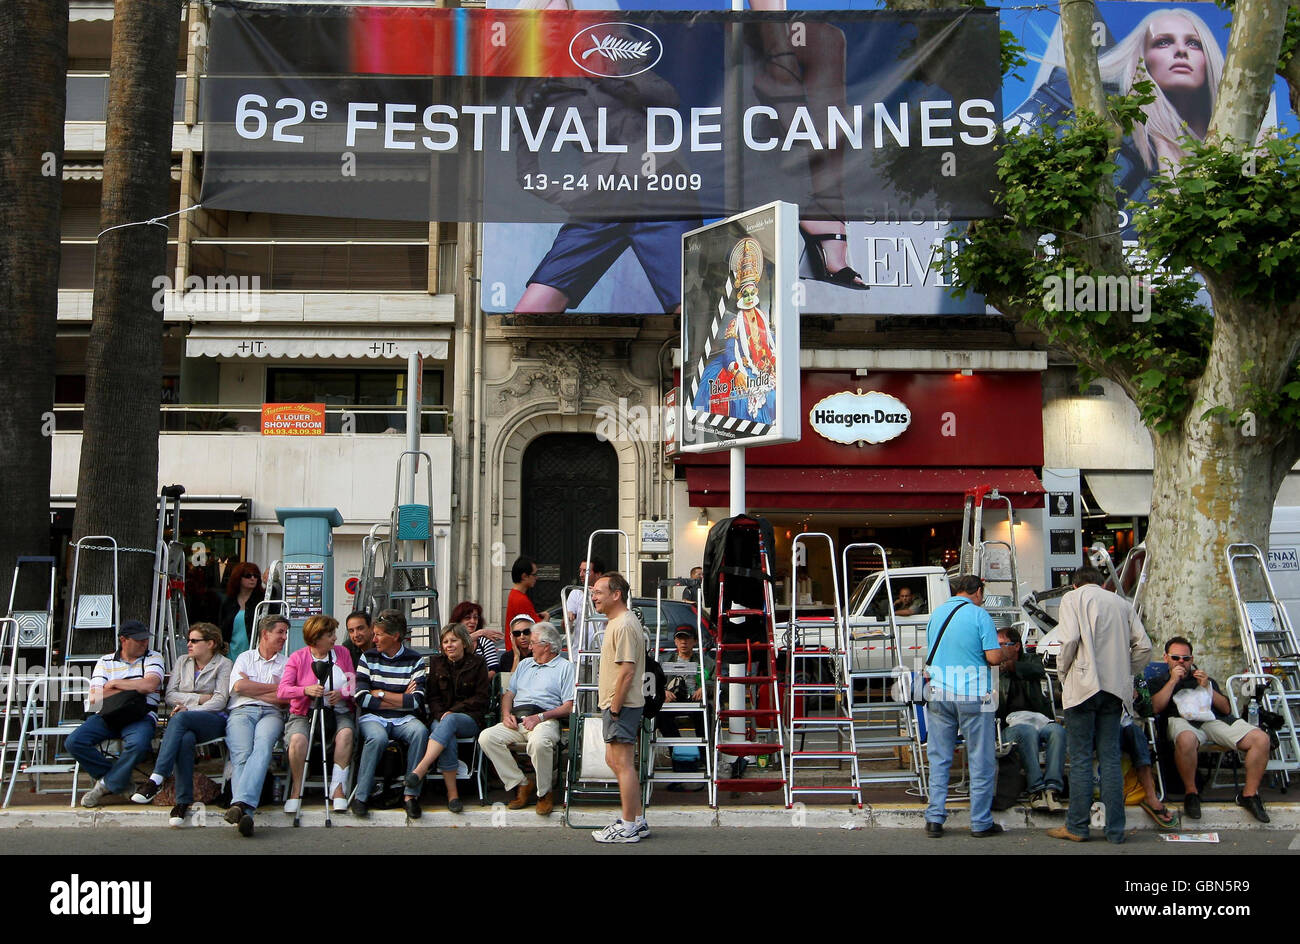 Los aficionados con escaleras de vapor se reúnen frente al Palais des Festivals, en Cannes, Francia, antes del inicio del Festival de Cannes, que comienza mañana. Foto de stock